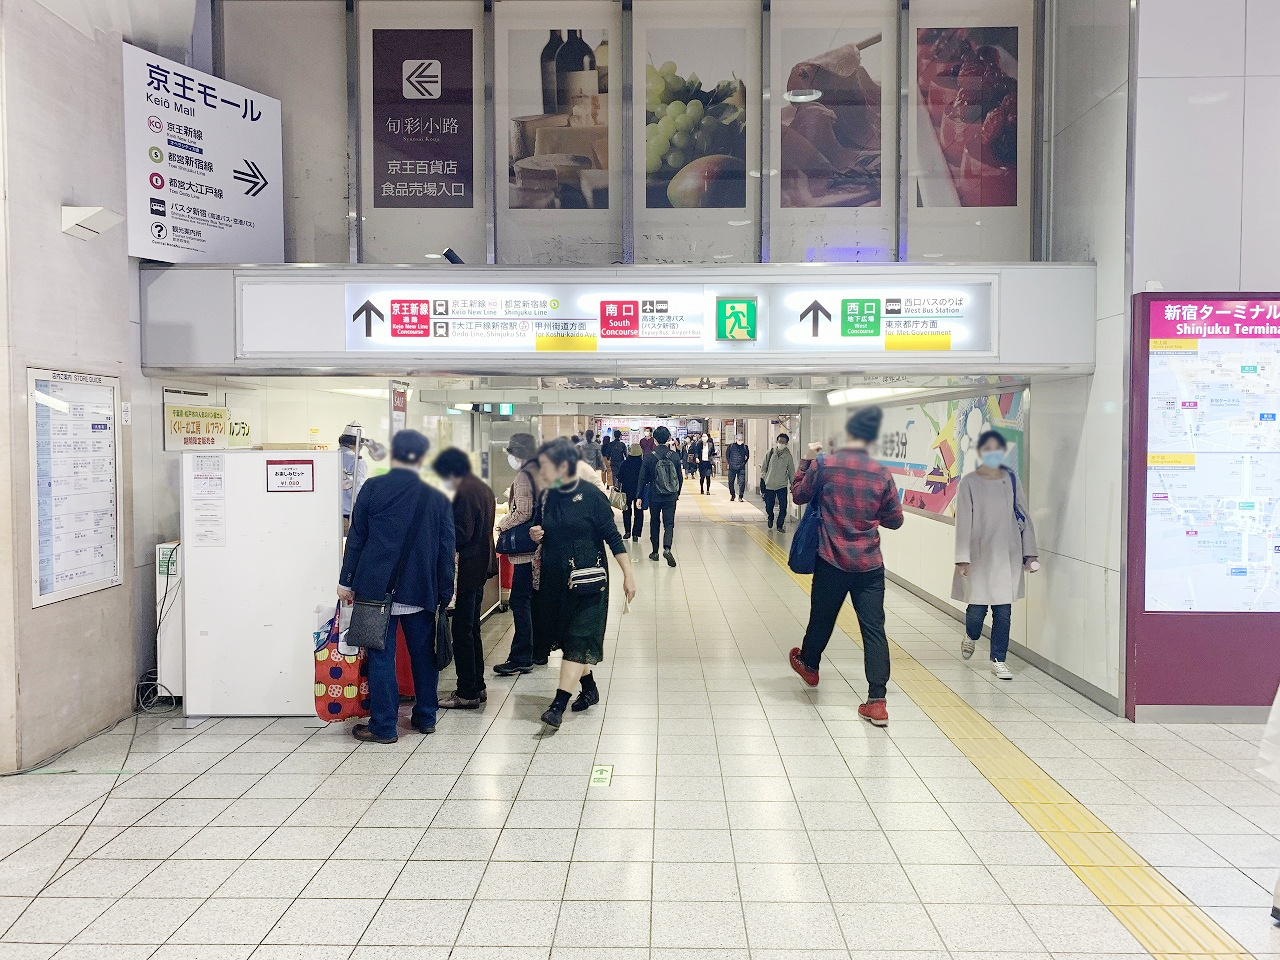 新宿K-DGキングウォール(京王百貨店口)駅看板・駅広告、写真(3)